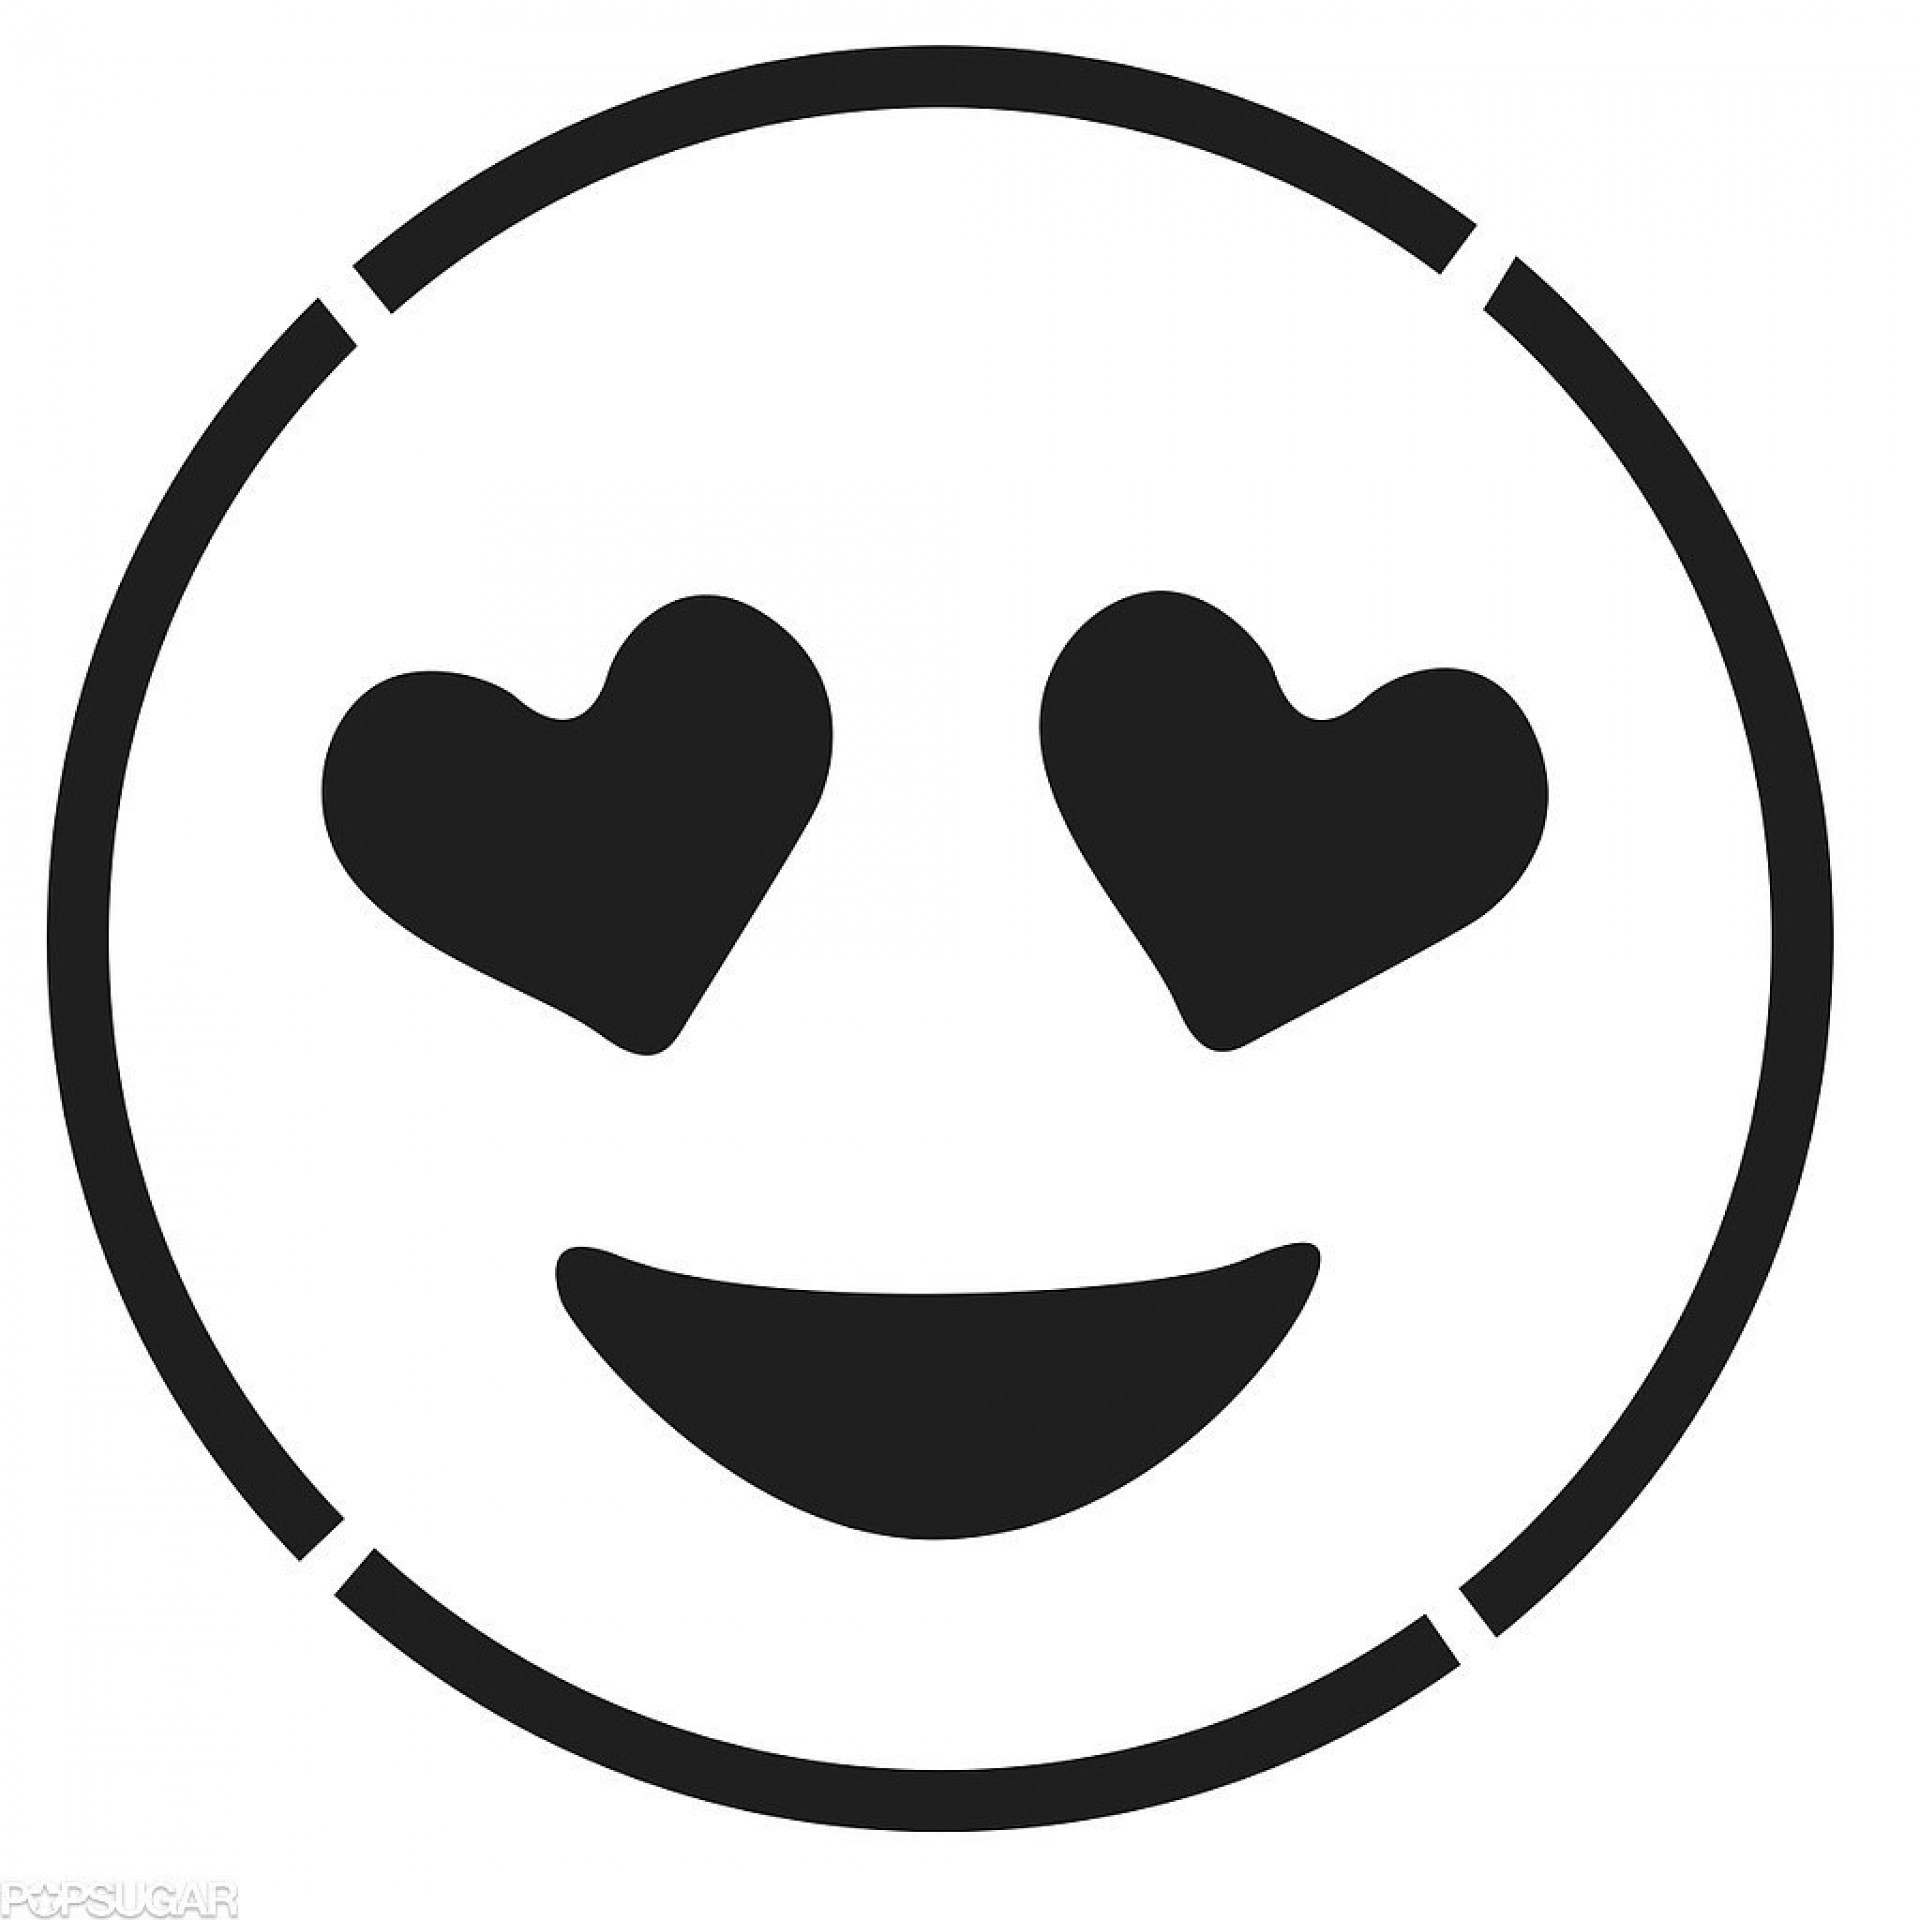 Hình nền emoji trắng Hình nền emoji đen: Đừng bỏ lỡ cơ hội để sở hữu một hình nền độc đáo với nhiều biểu tượng emoji ngộ nghĩnh và đáng yêu. Các mẫu hình nền emoji trắng và đen đều rất thú vị và sẽ khiến cho màn hình của bạn thêm phần sinh động.